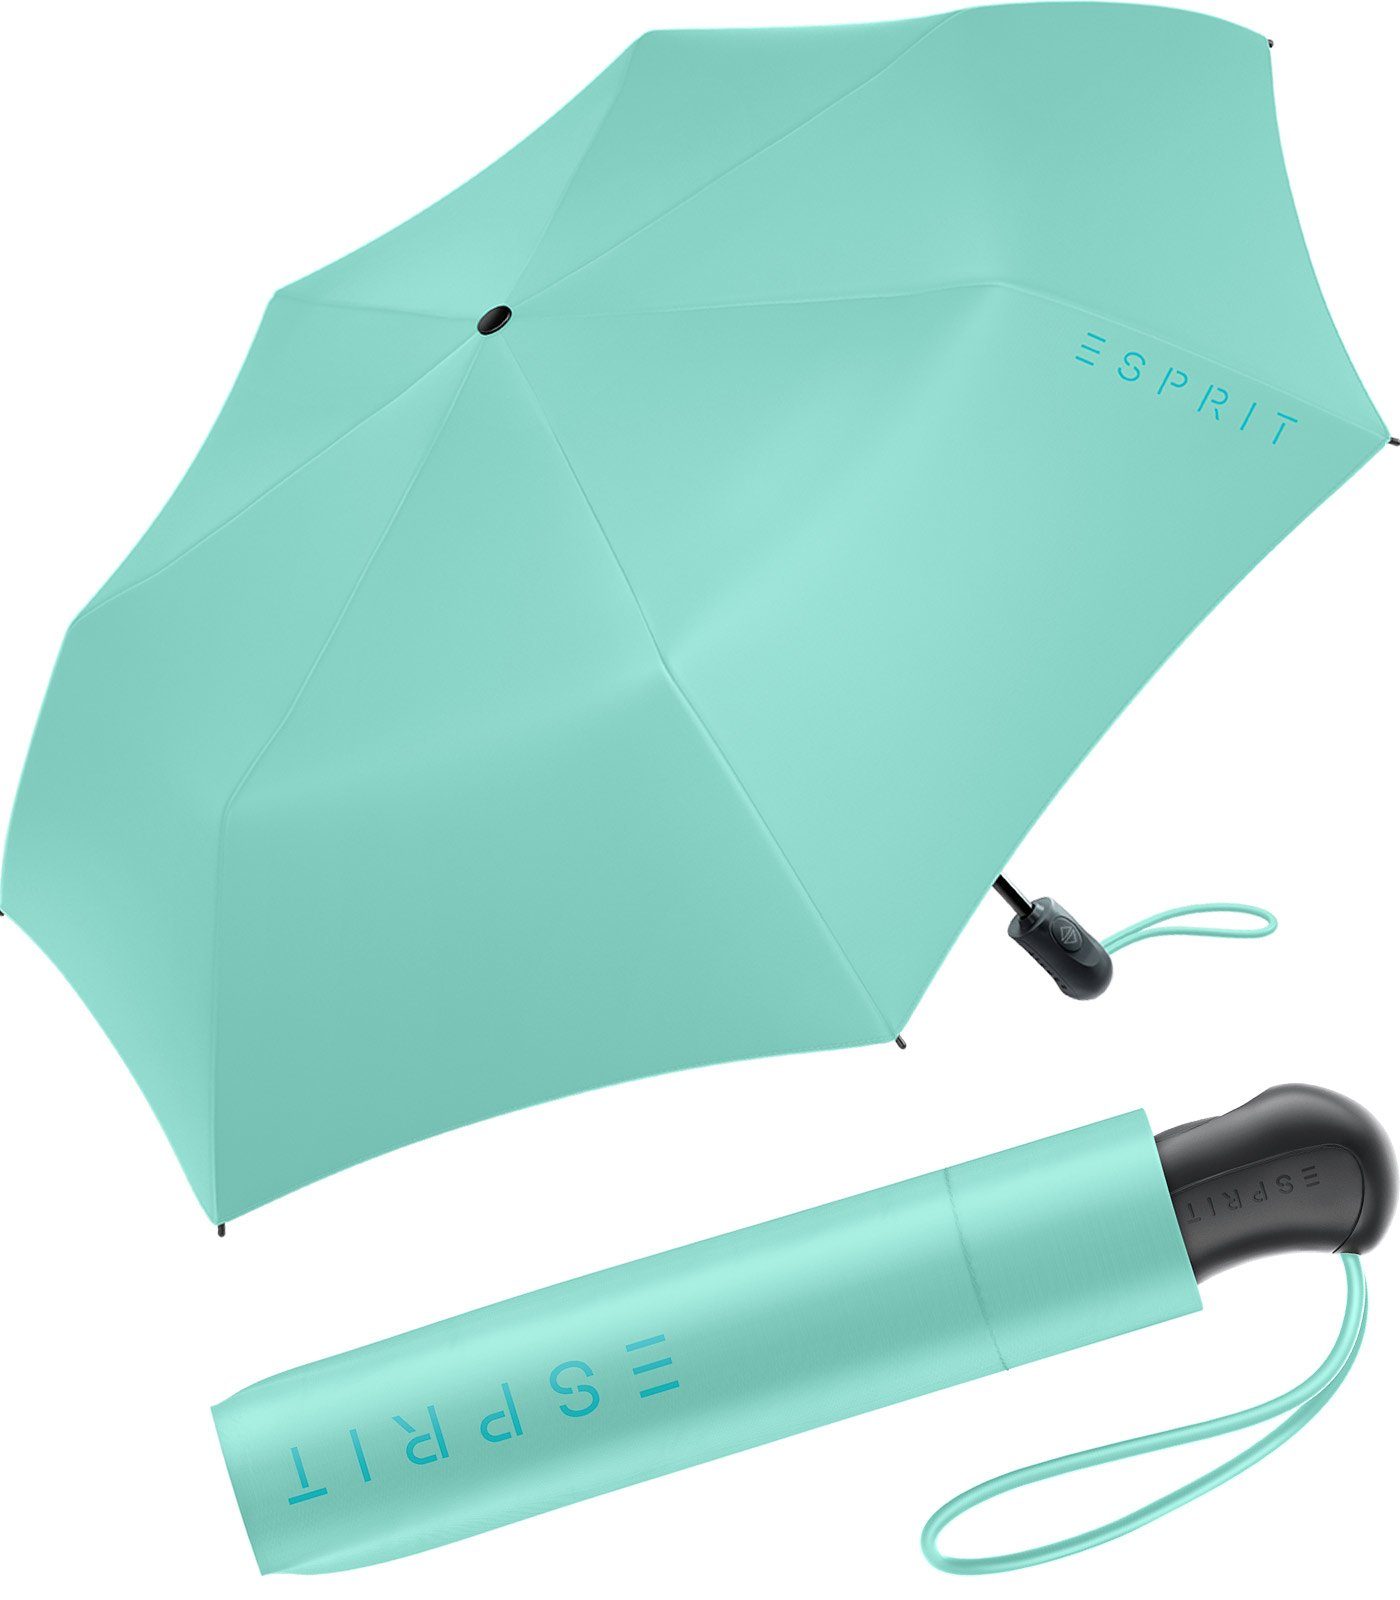 Esprit Taschenregenschirm Damen Easymatic Light Auf-Zu Automatik FJ 2023, stabil und praktisch, in den neuen Trendfarben mint